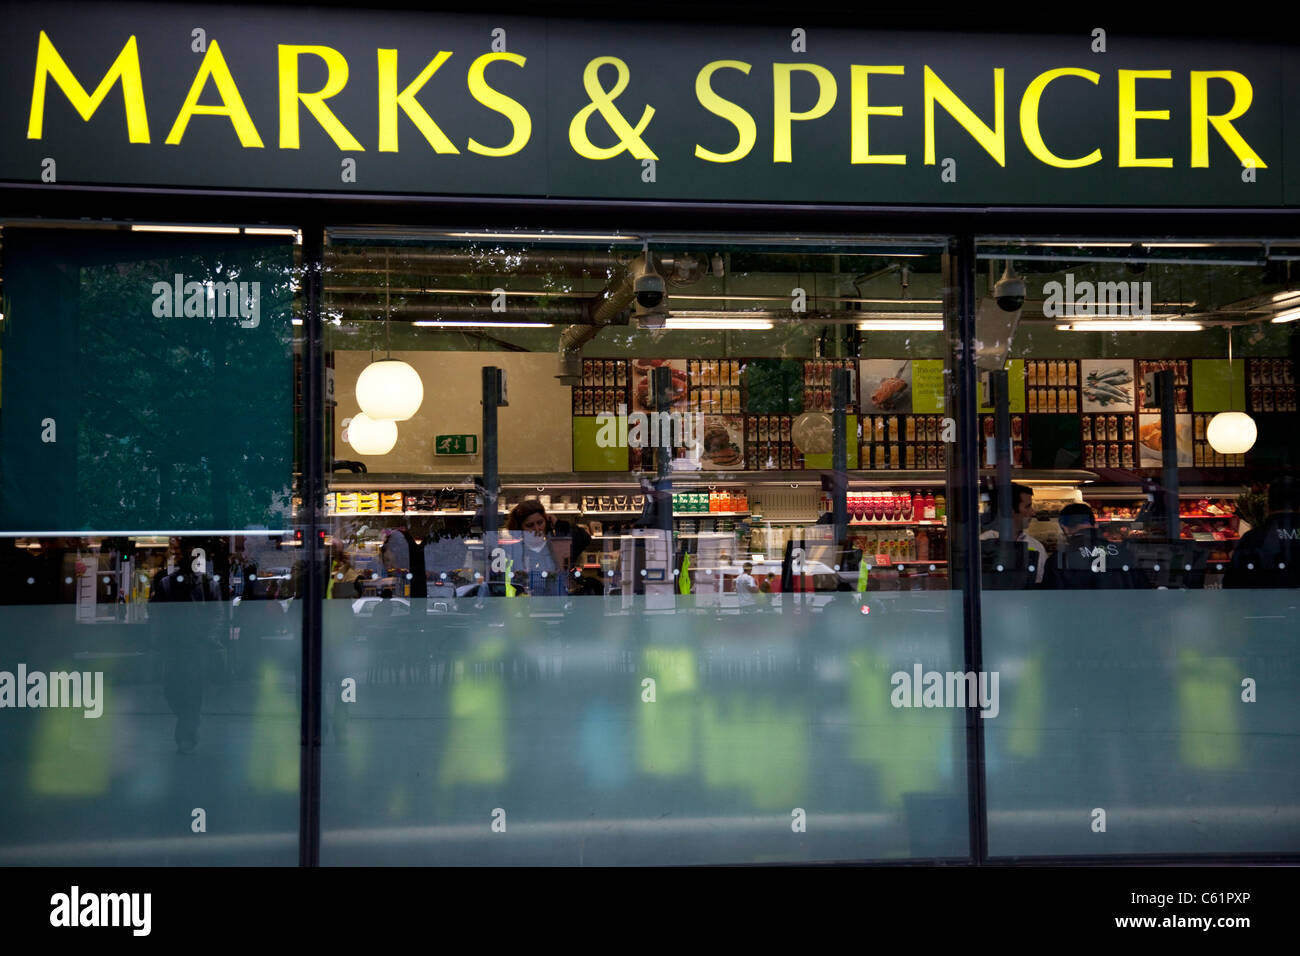 Marks & Spencer supermarket shop front. Stock Photo